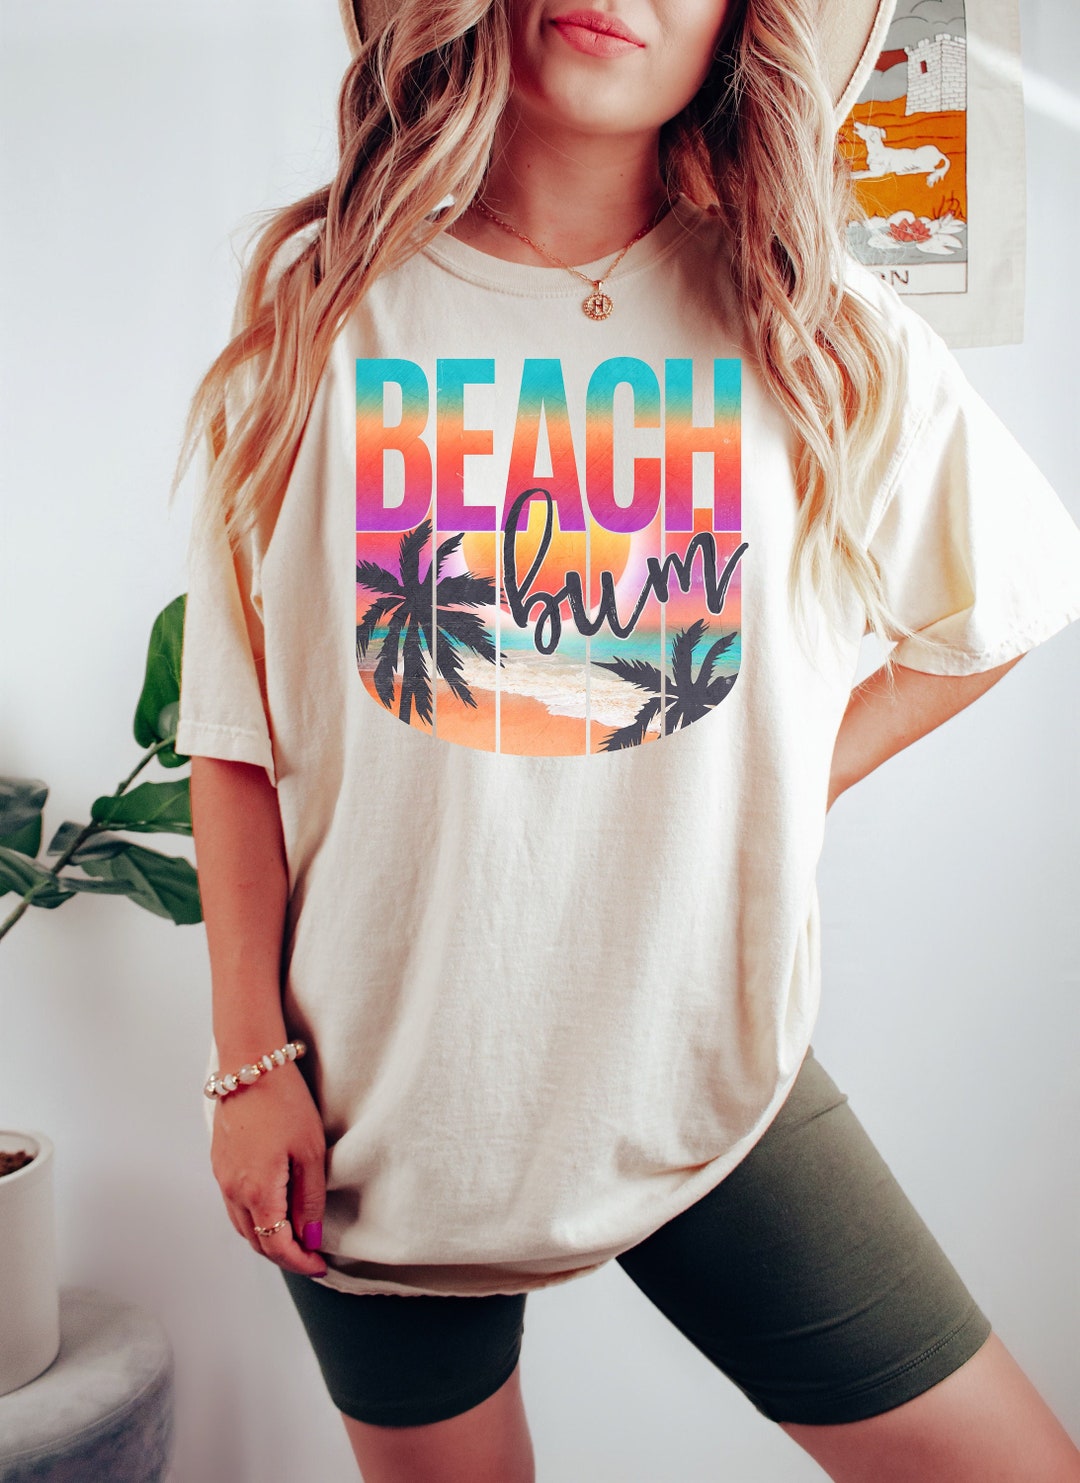 Beach Bum Shirt, Beach Shirt, Summer Shirt, Besties Shirts, Fun Beach ...